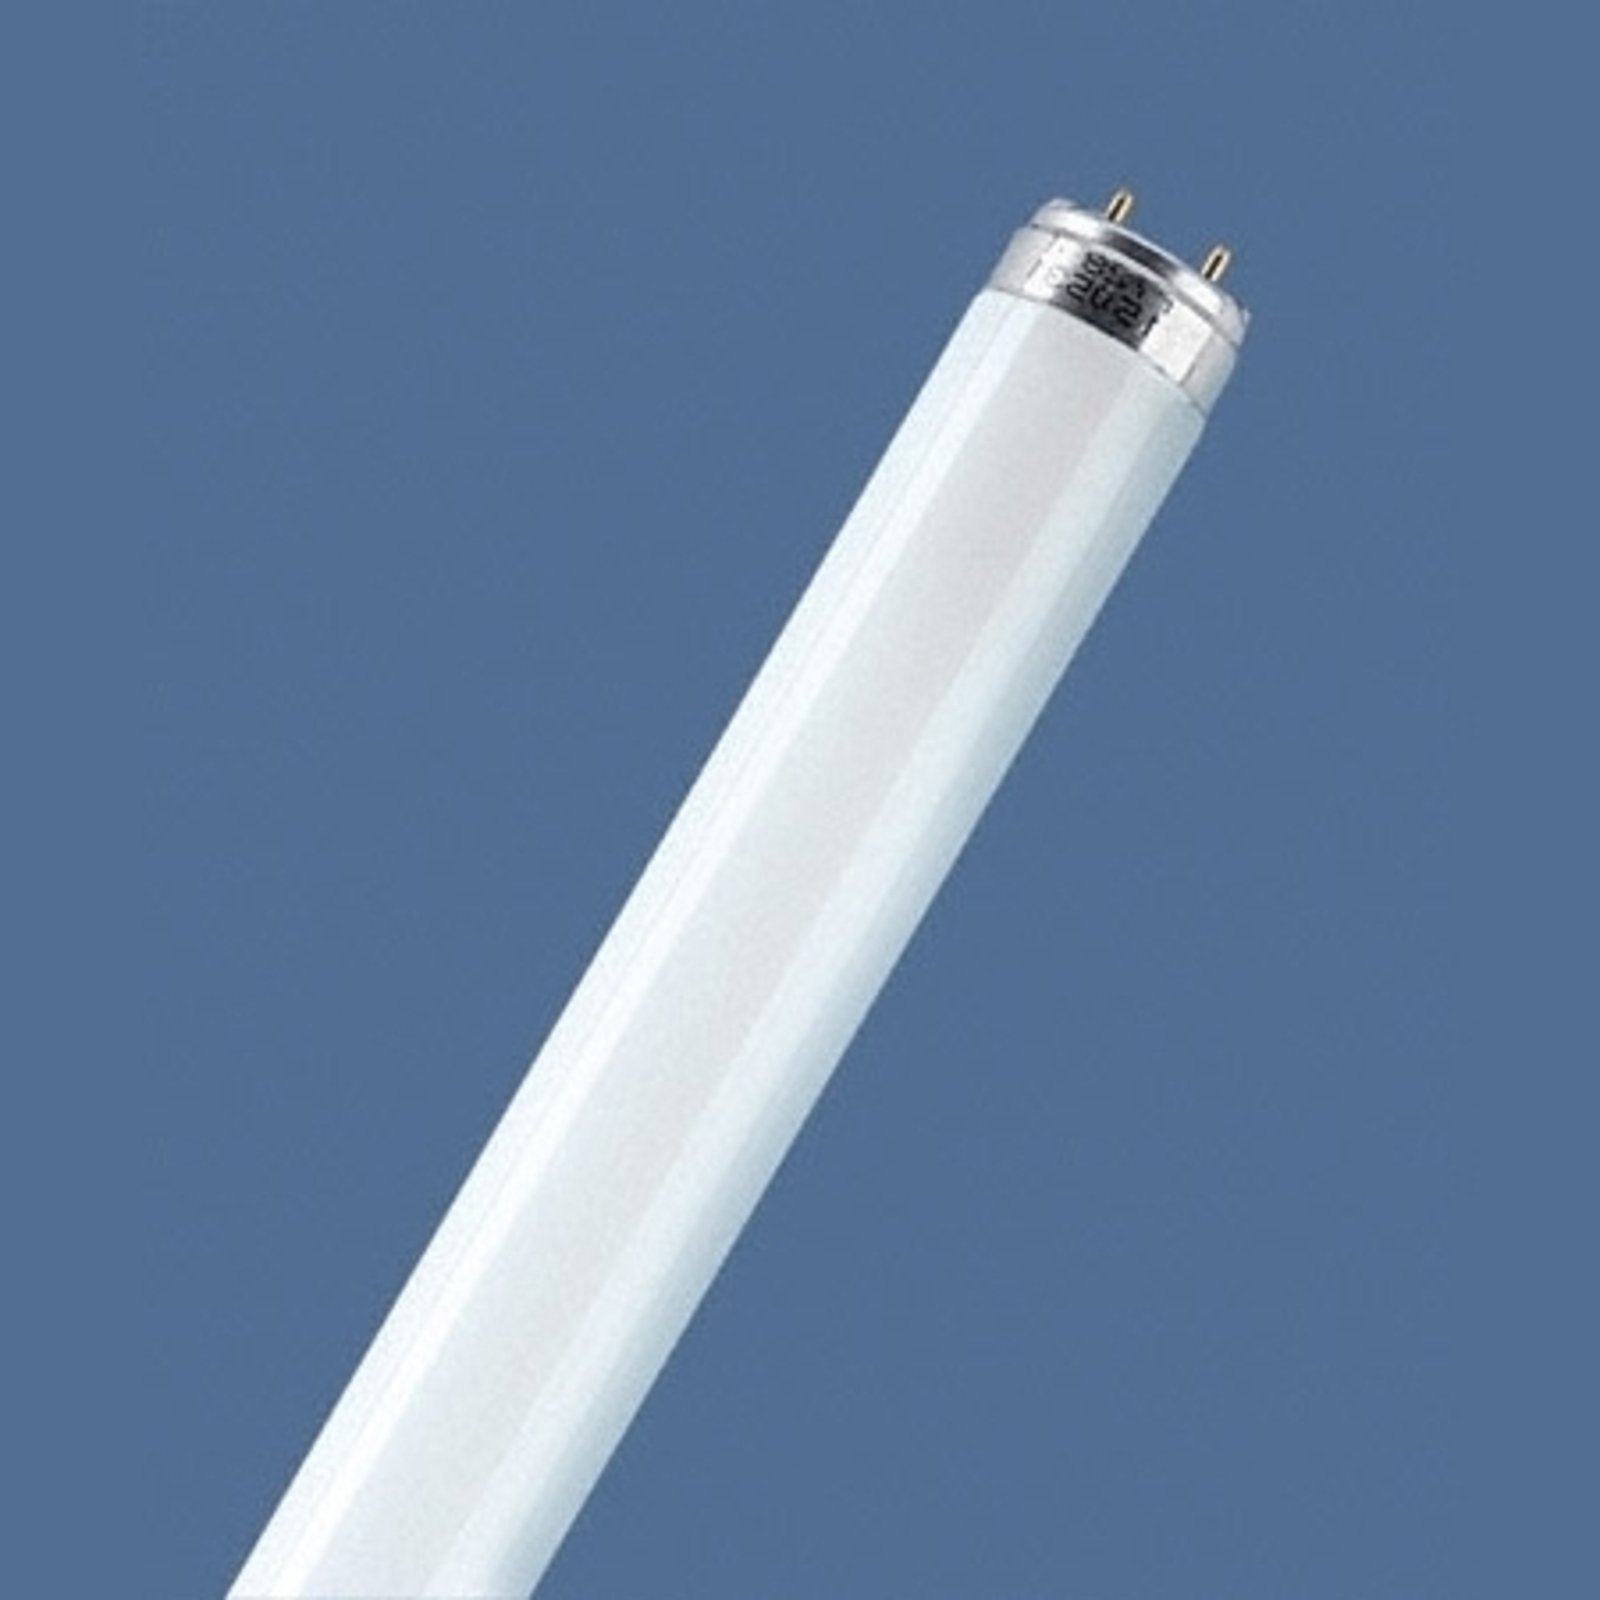 Fluoreszkáló cső G13 T8 18W 827 Lumilux